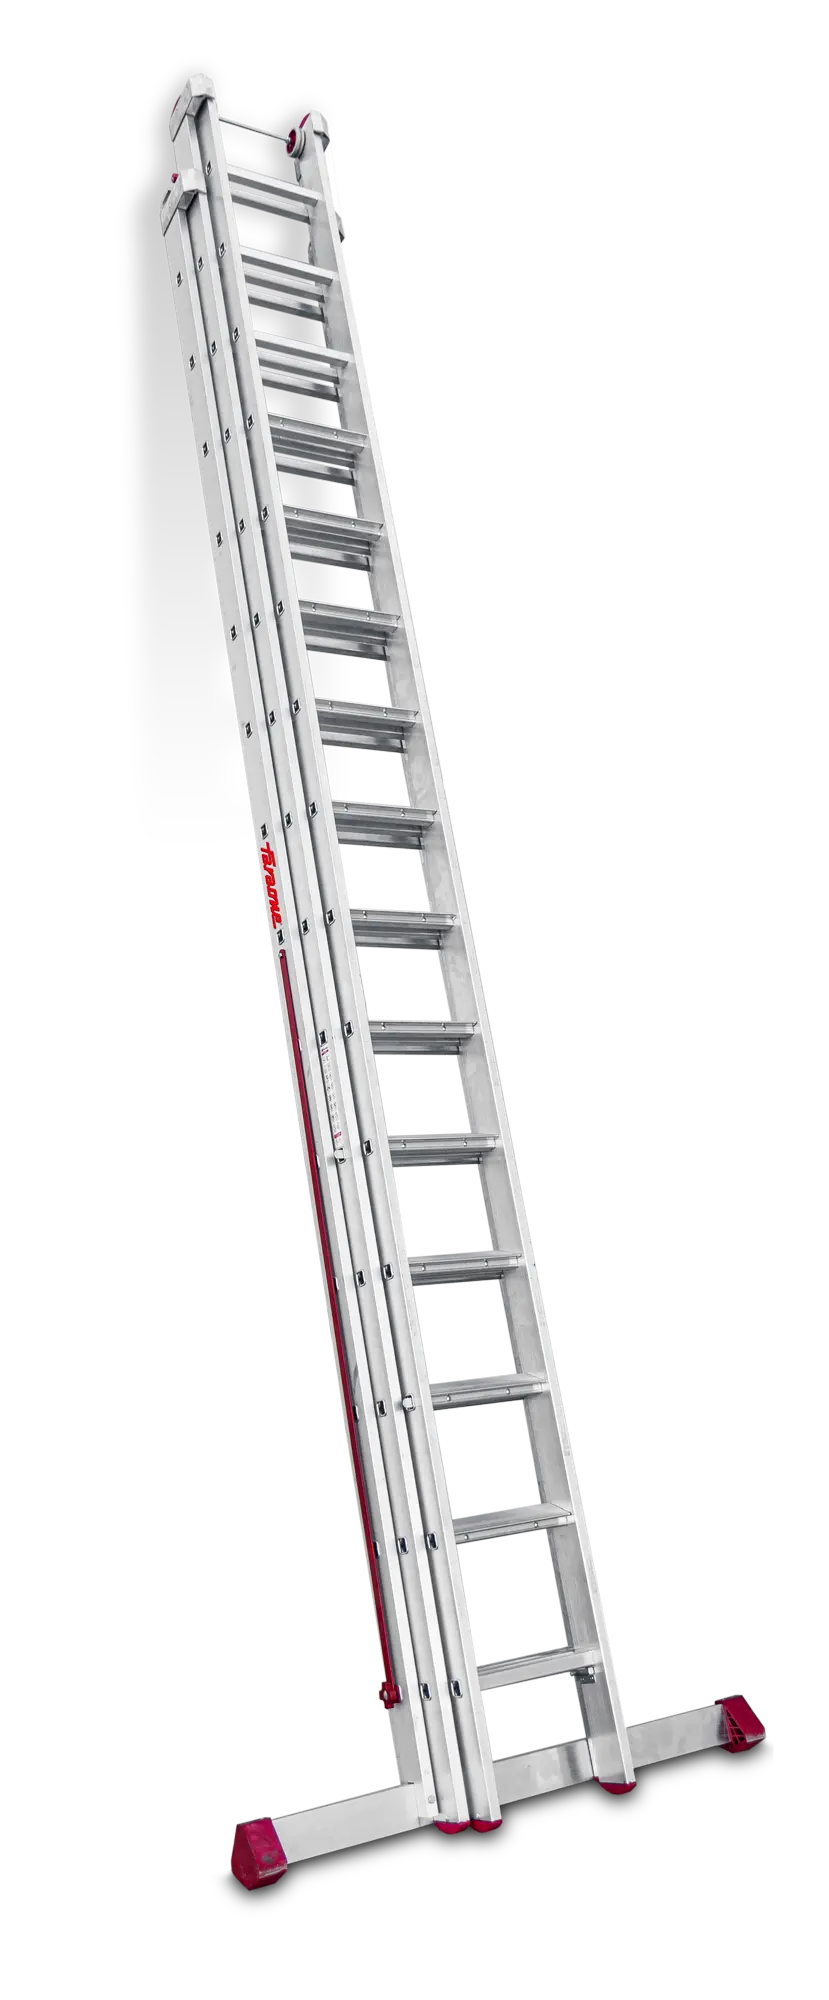 Escalera multiuso de aluminio 44 peldaños en 3 tramos (14+15+15)